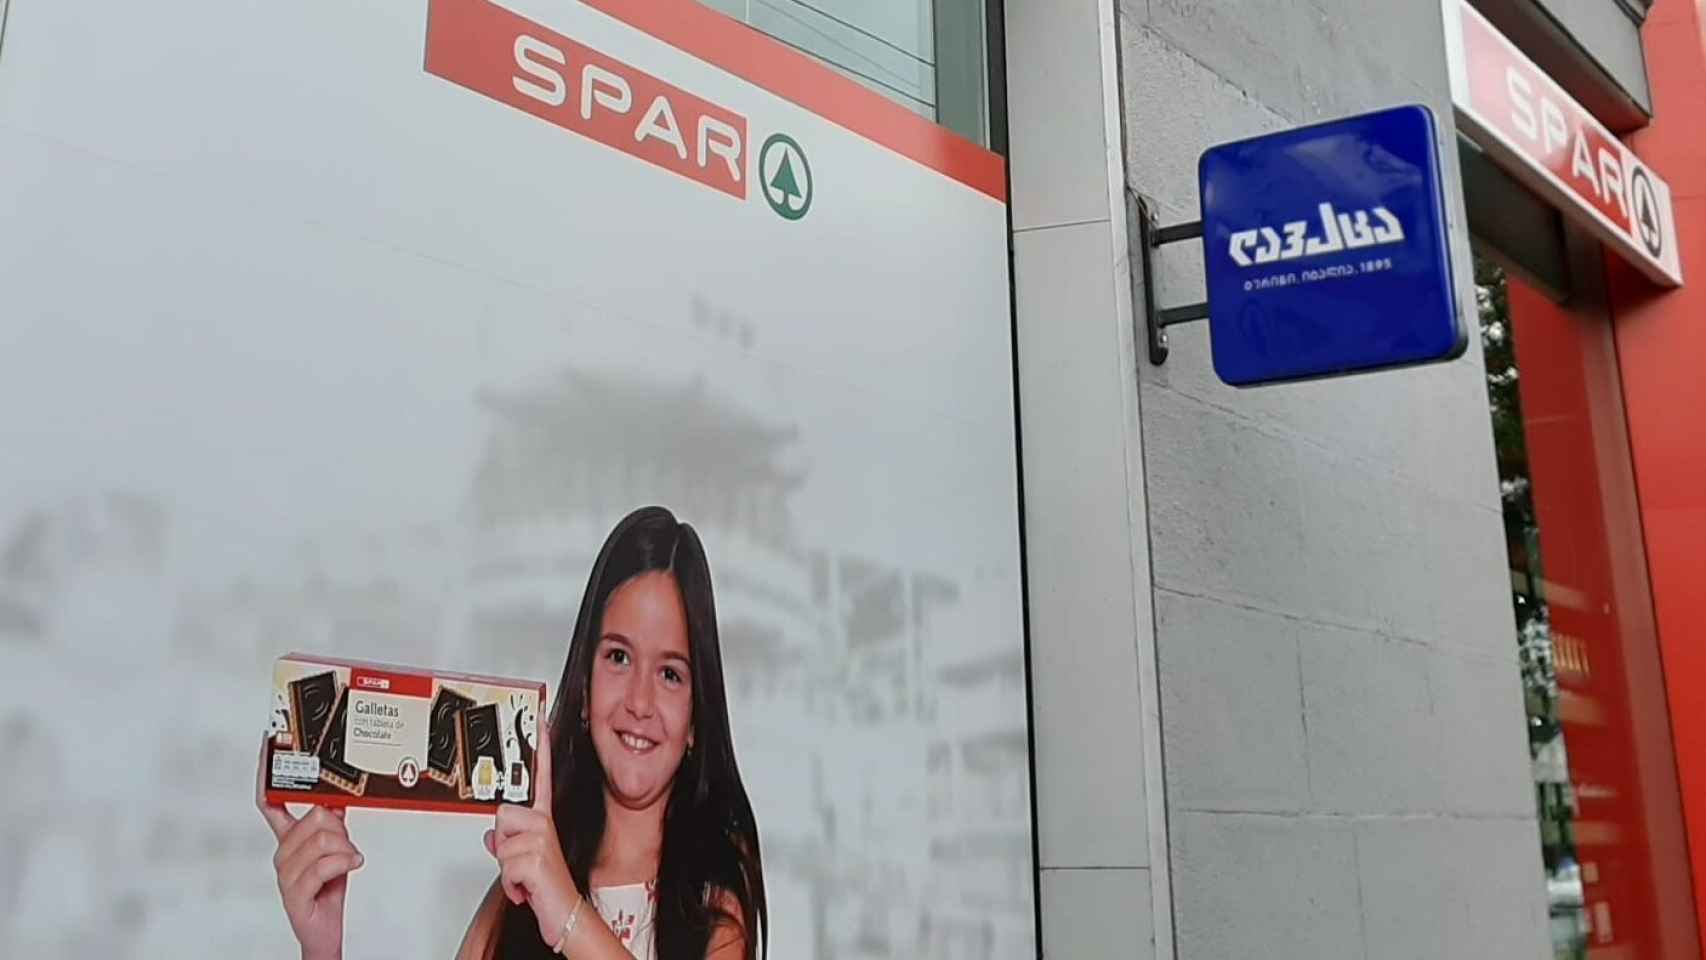 Un supermercado Spar publicita galletas en castellano en Georgia.